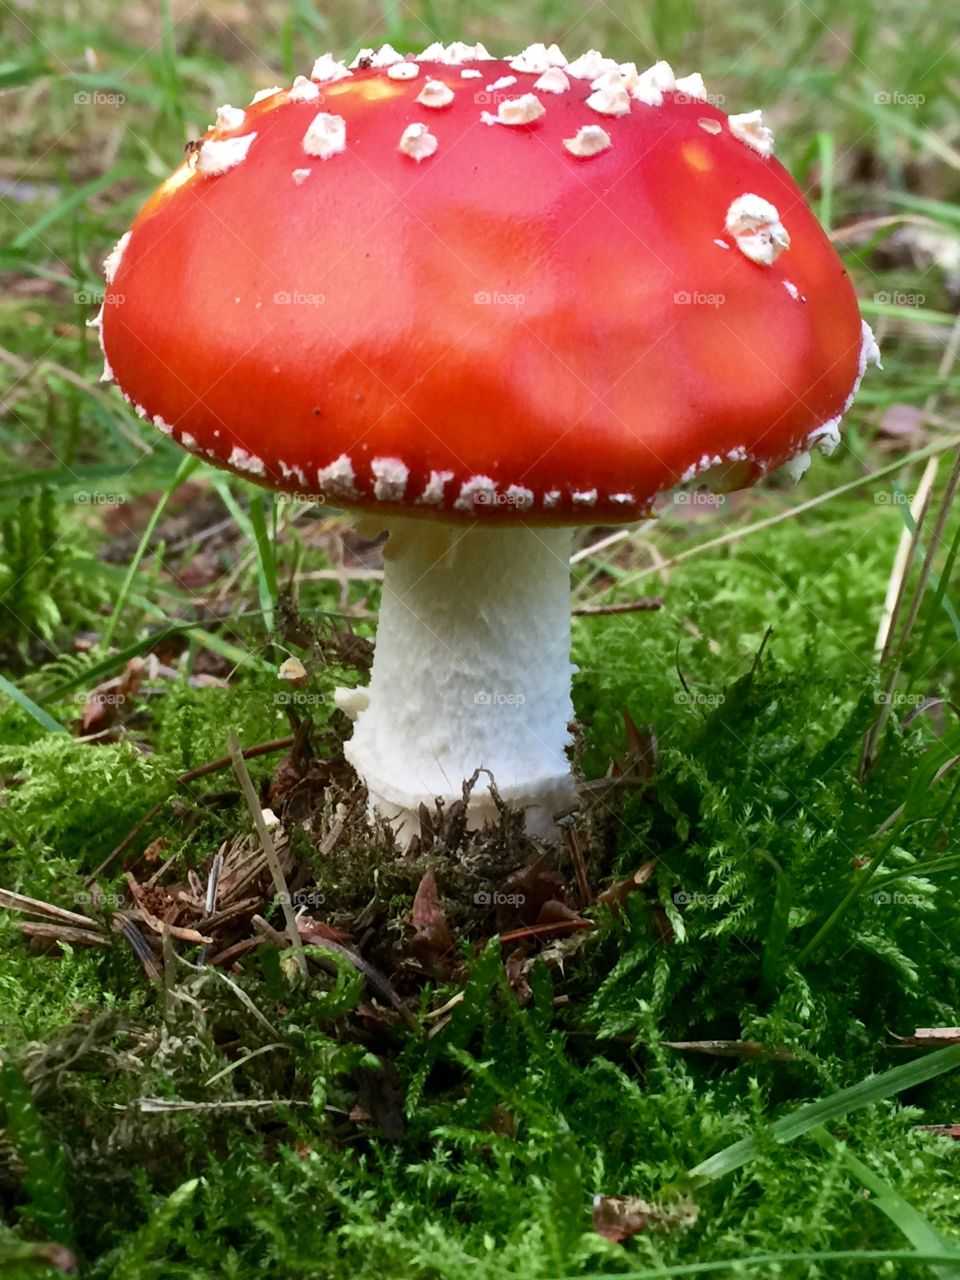 Fly agaric mushroom on grassy field